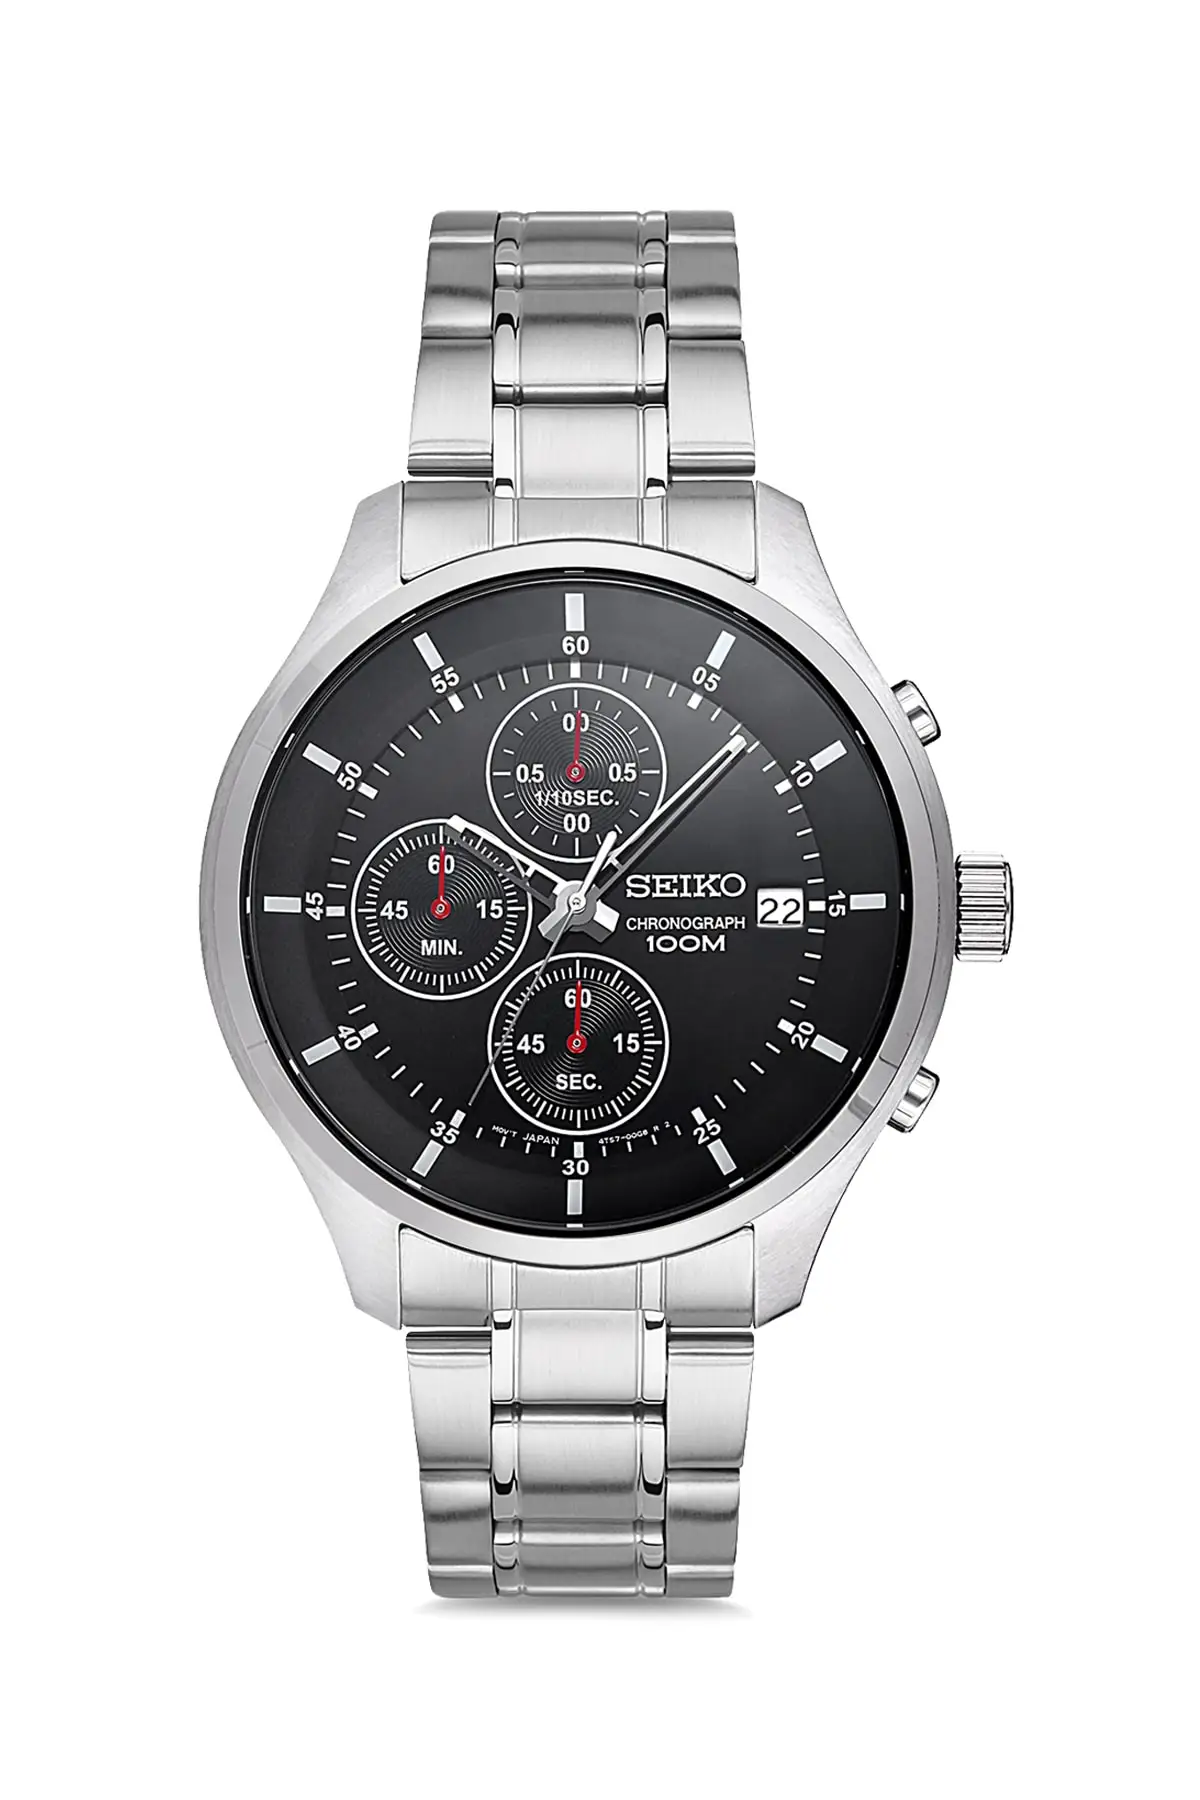 

Seiko SKS539P мужские наручные часы Классические Стильные модели новая модель Европа Америка Мода Японские 100 Оригинал